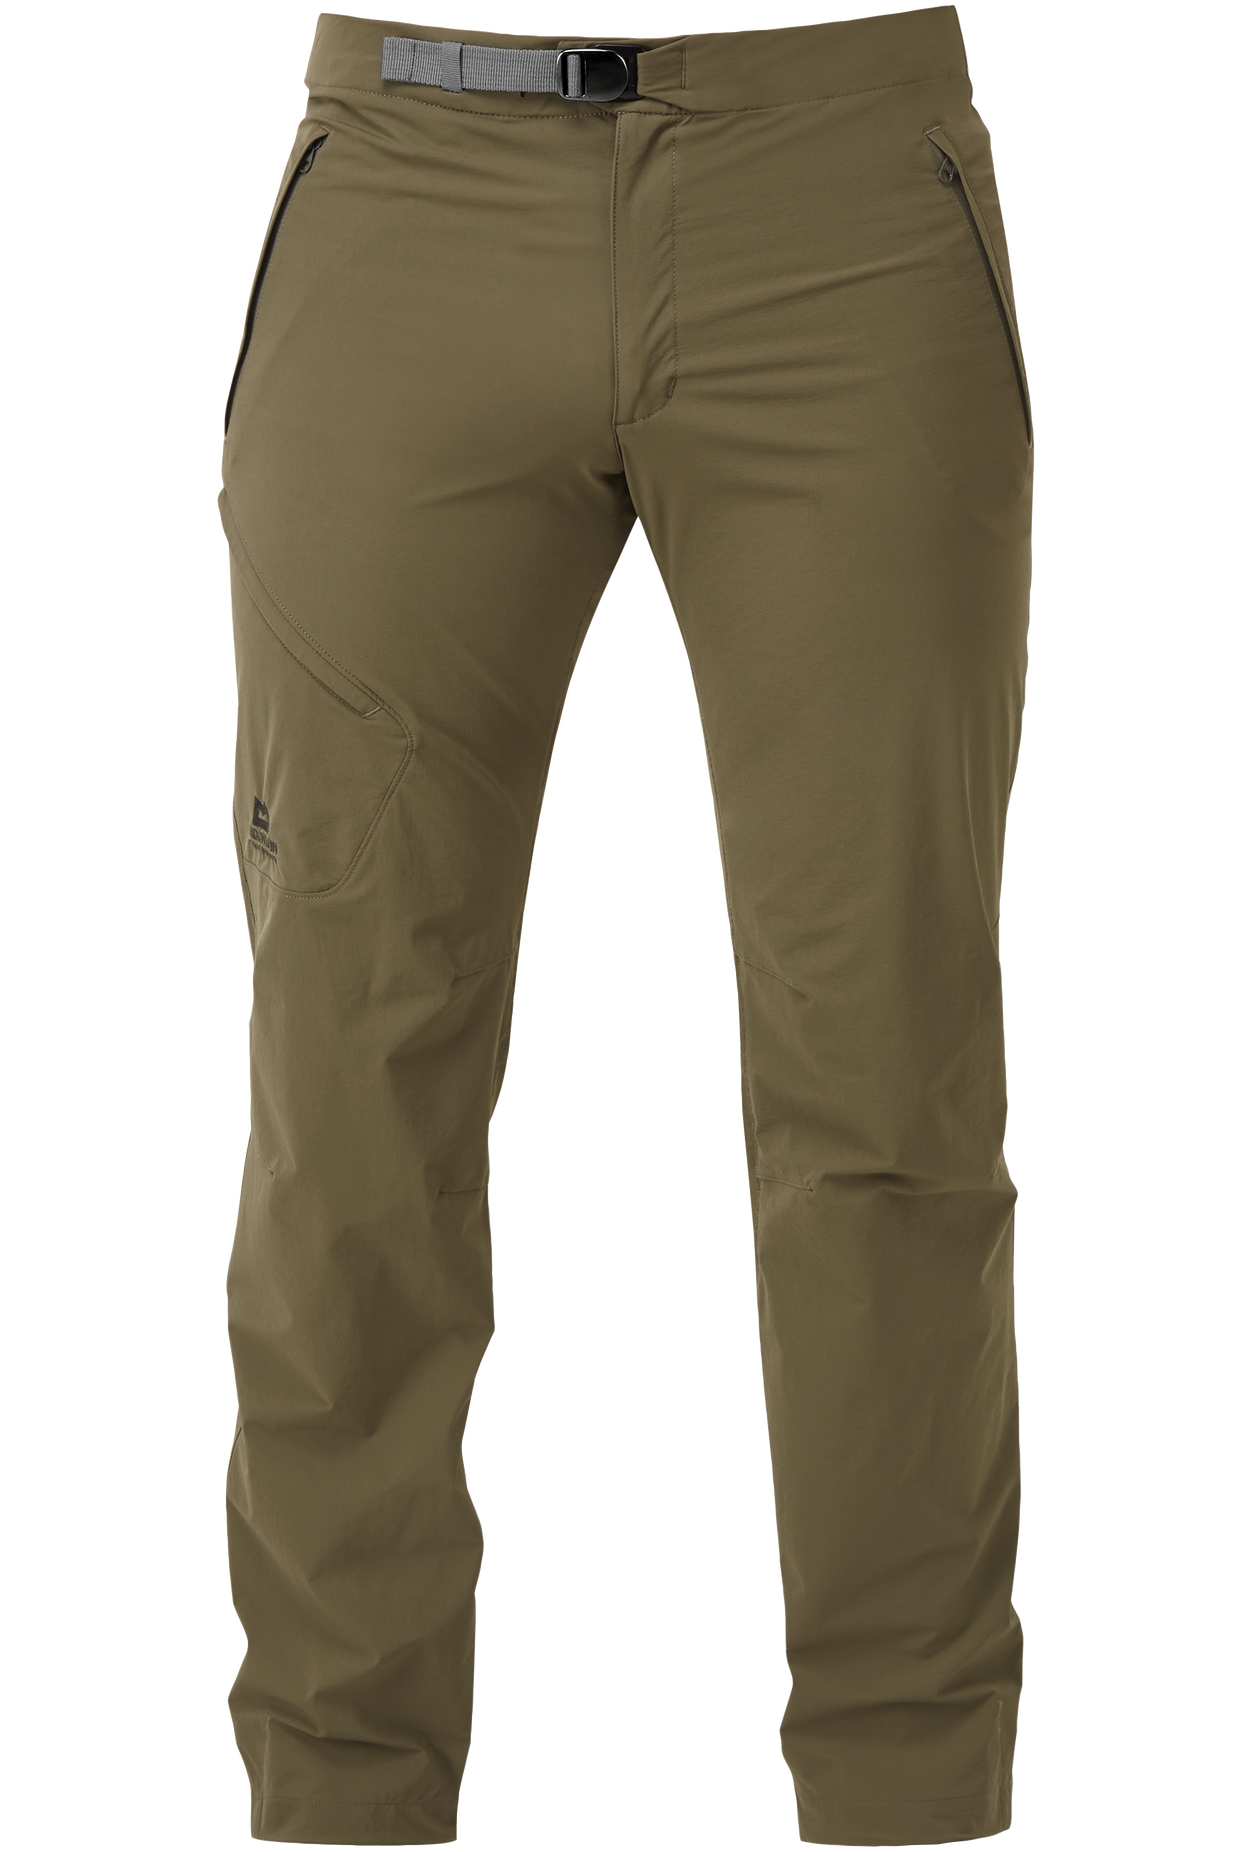 Mountain Equipment pánské softshellové kalhoty Comici Pant - prodloužené Barva: Mudstone, Velikost: 30/S